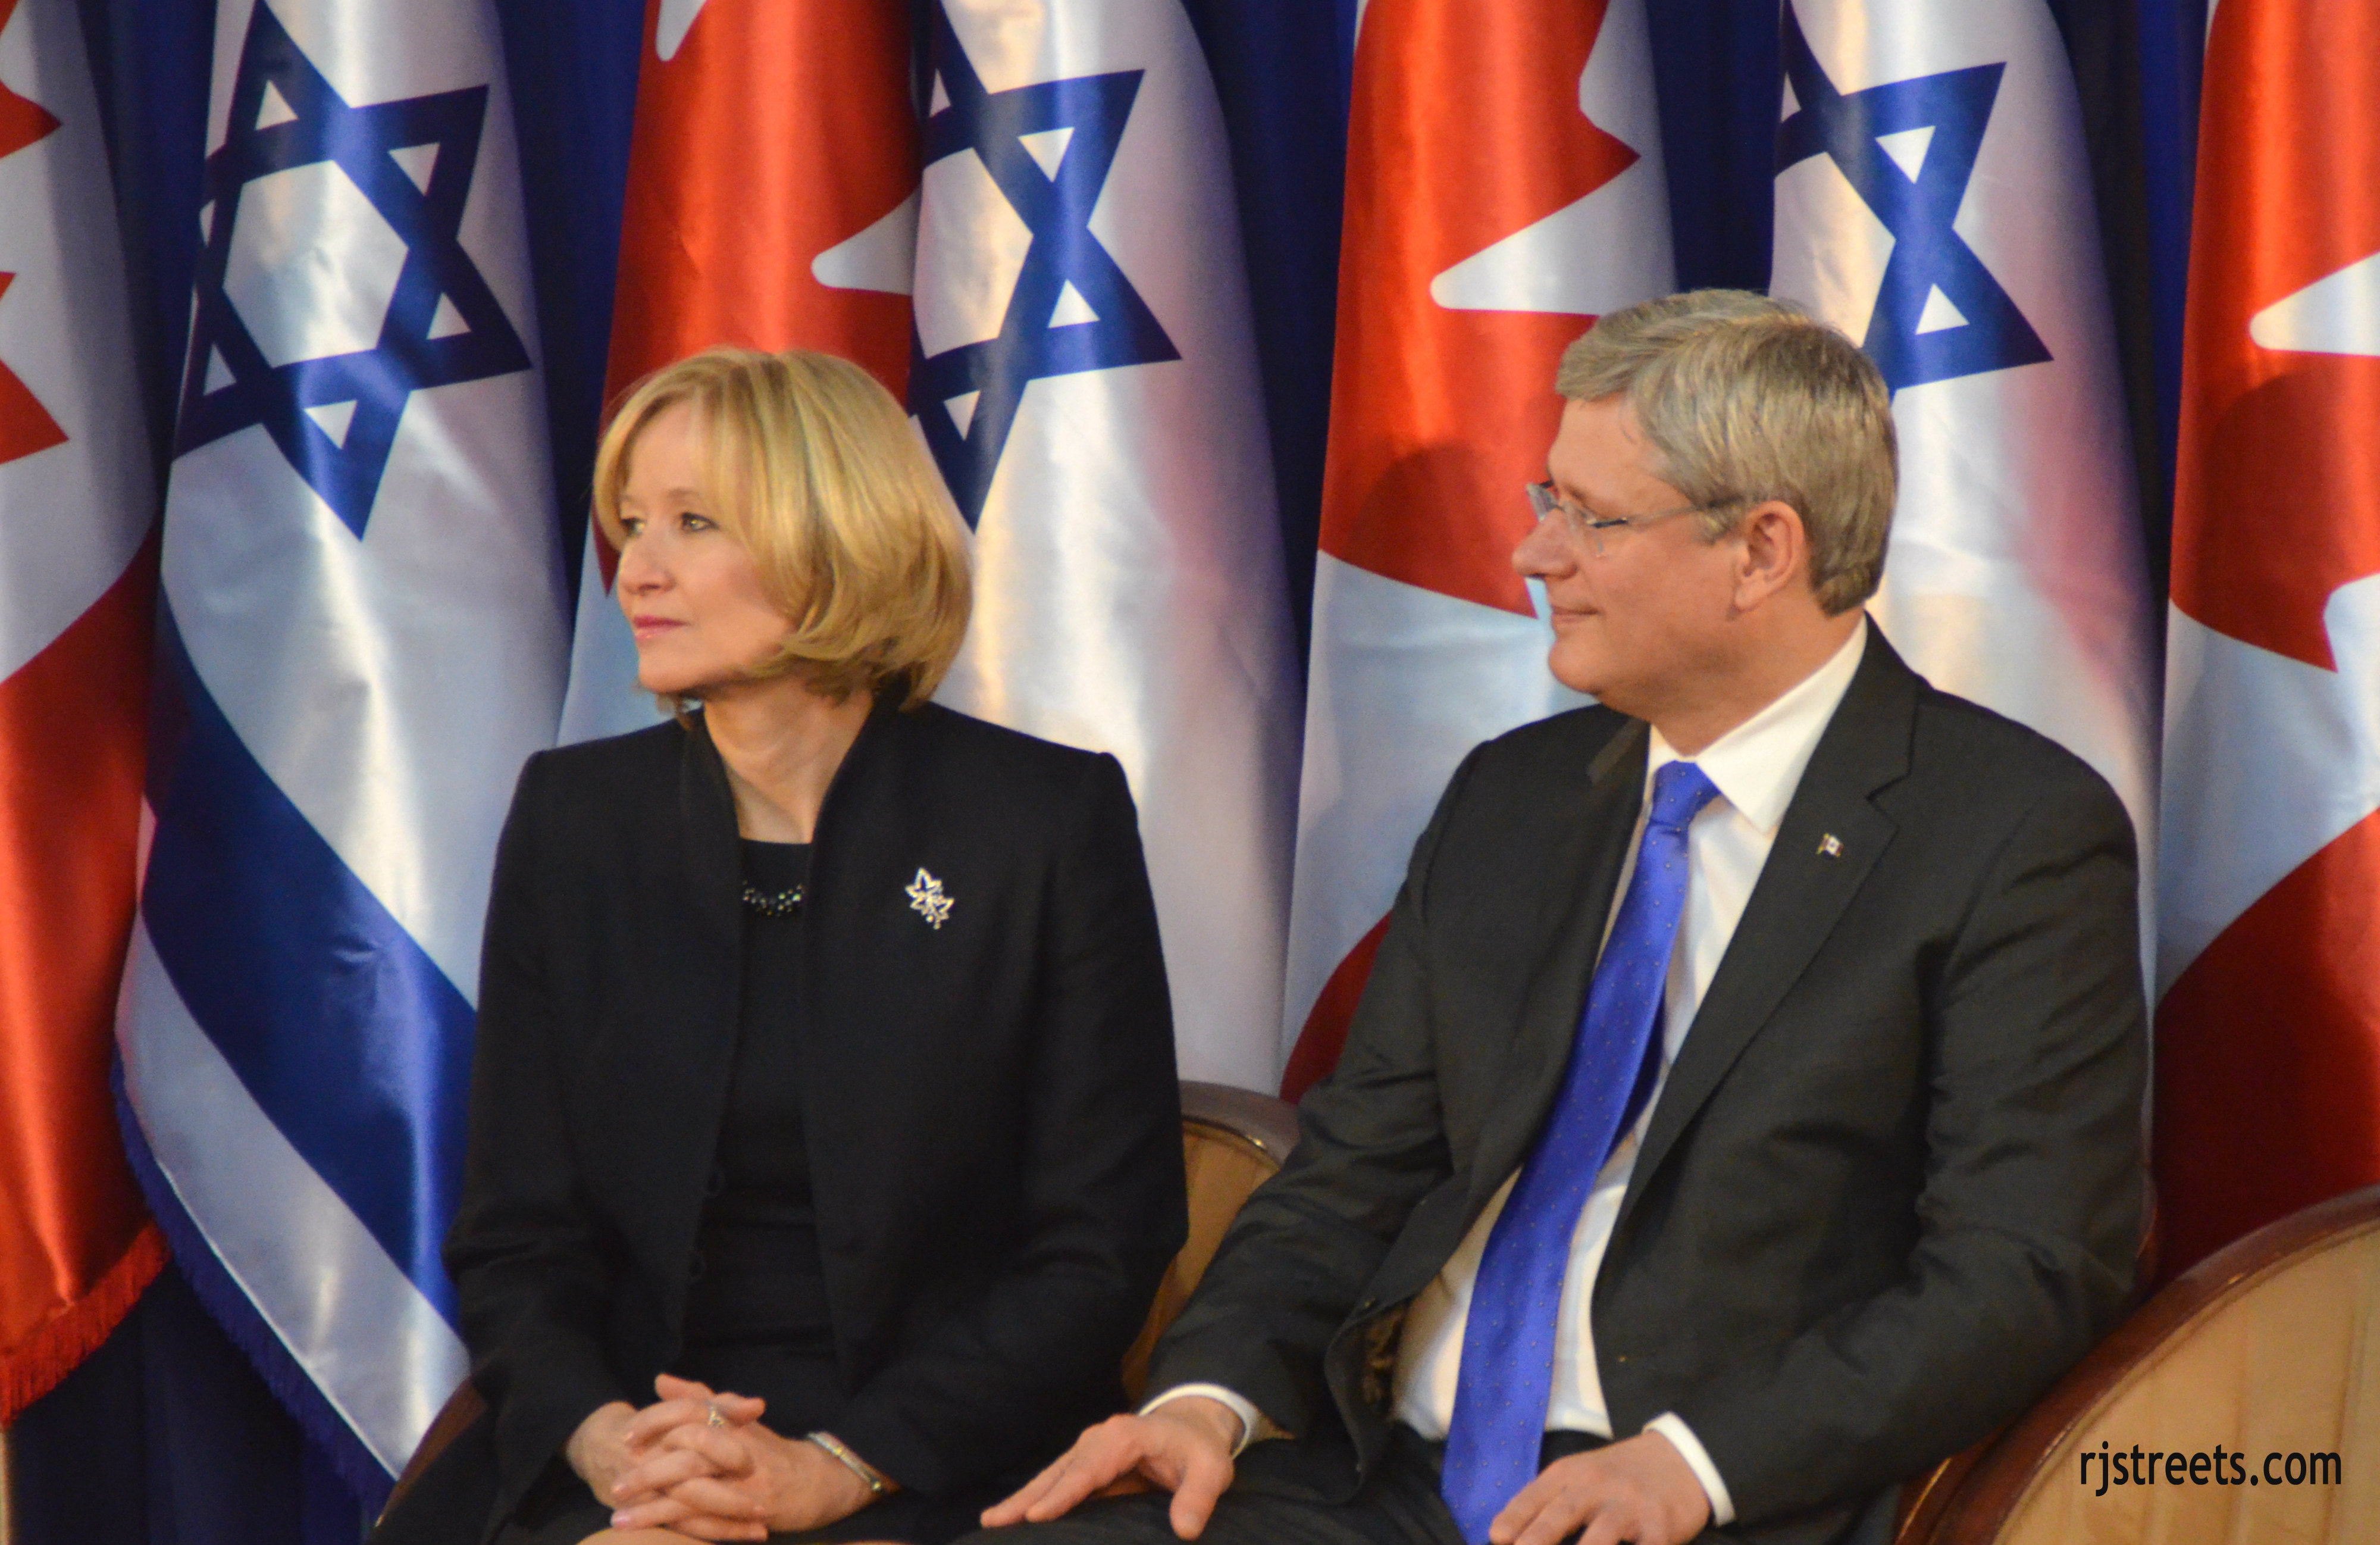 photo PM Canada, image Steven Harper, picture Steven Harper and wife